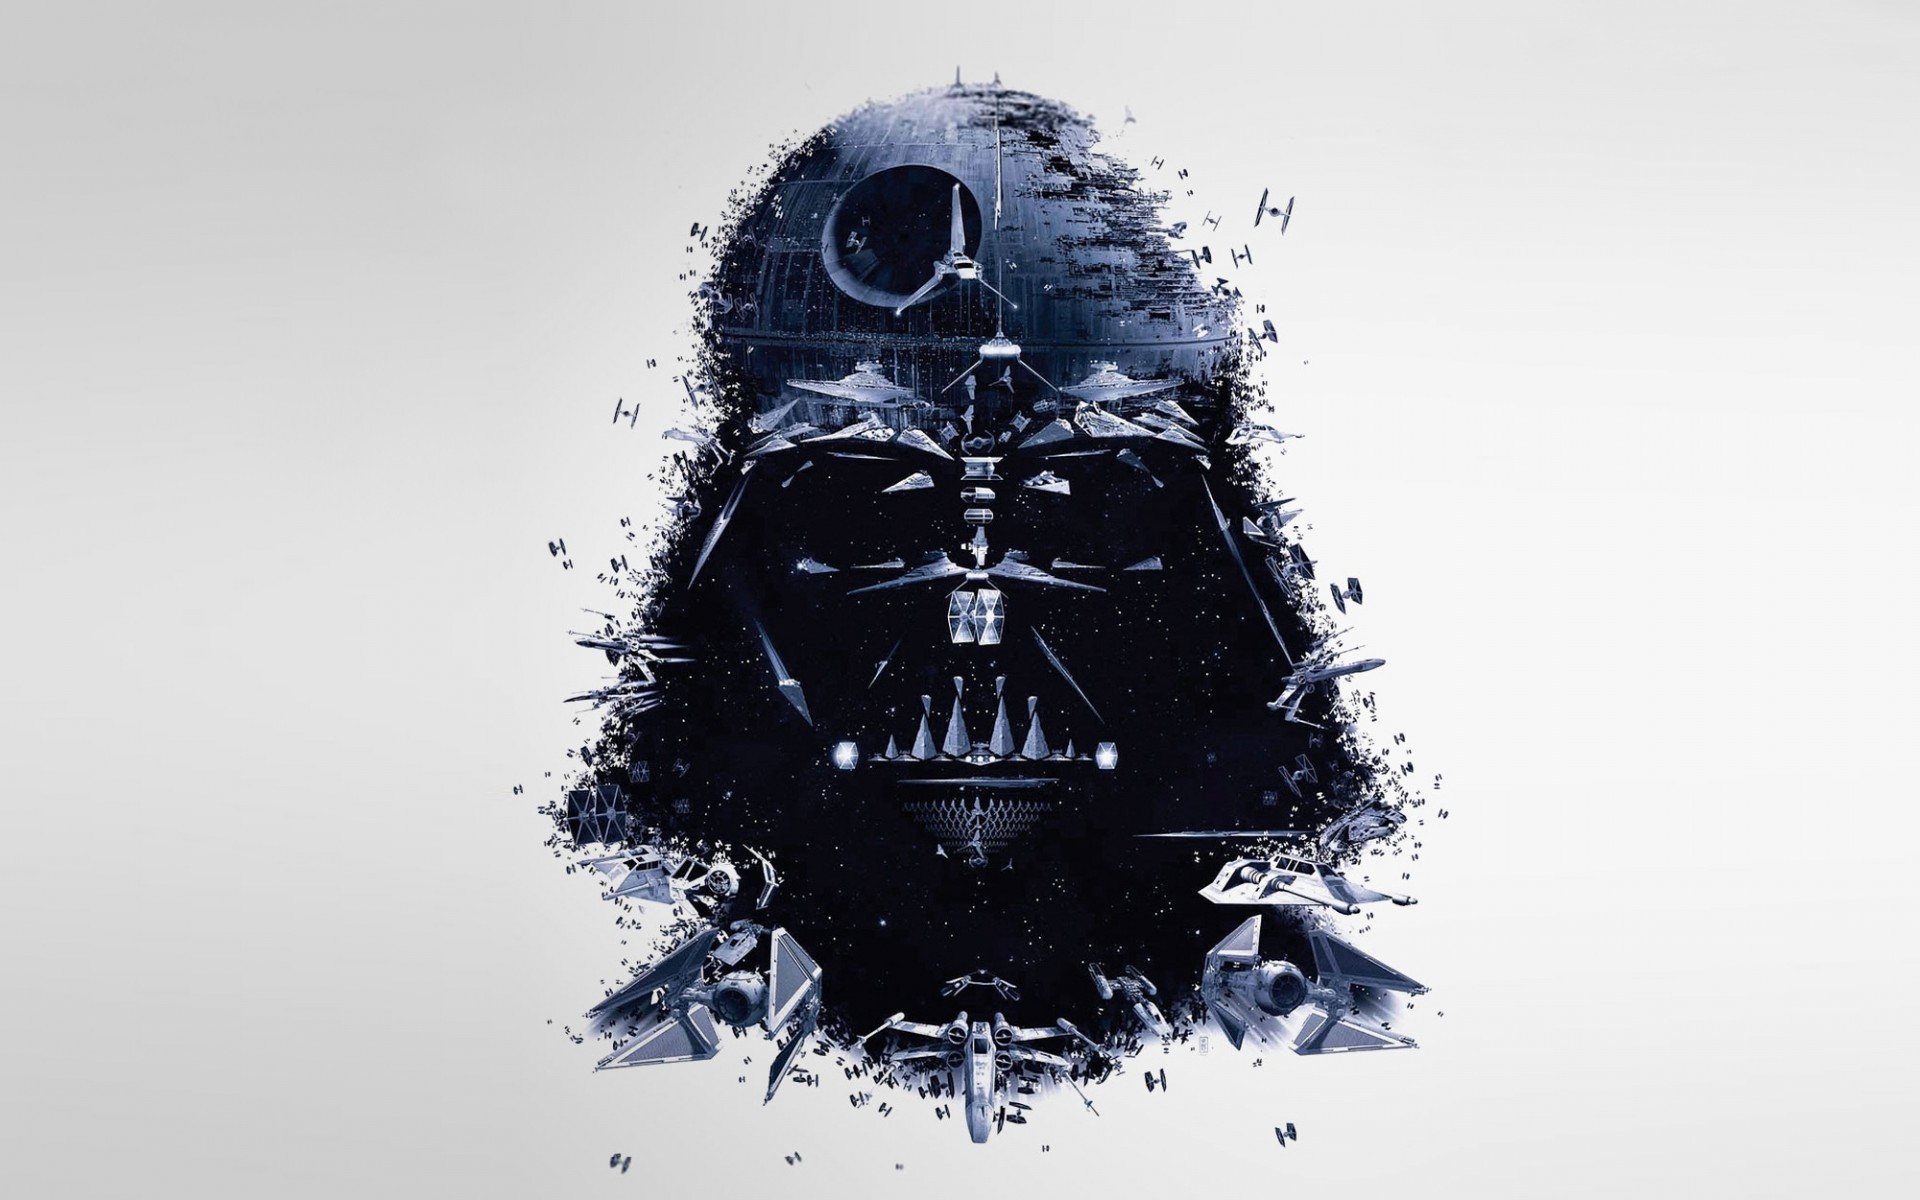 Vader star wars movies sci fi darth spaceships spacecraft death star mask wallpaper